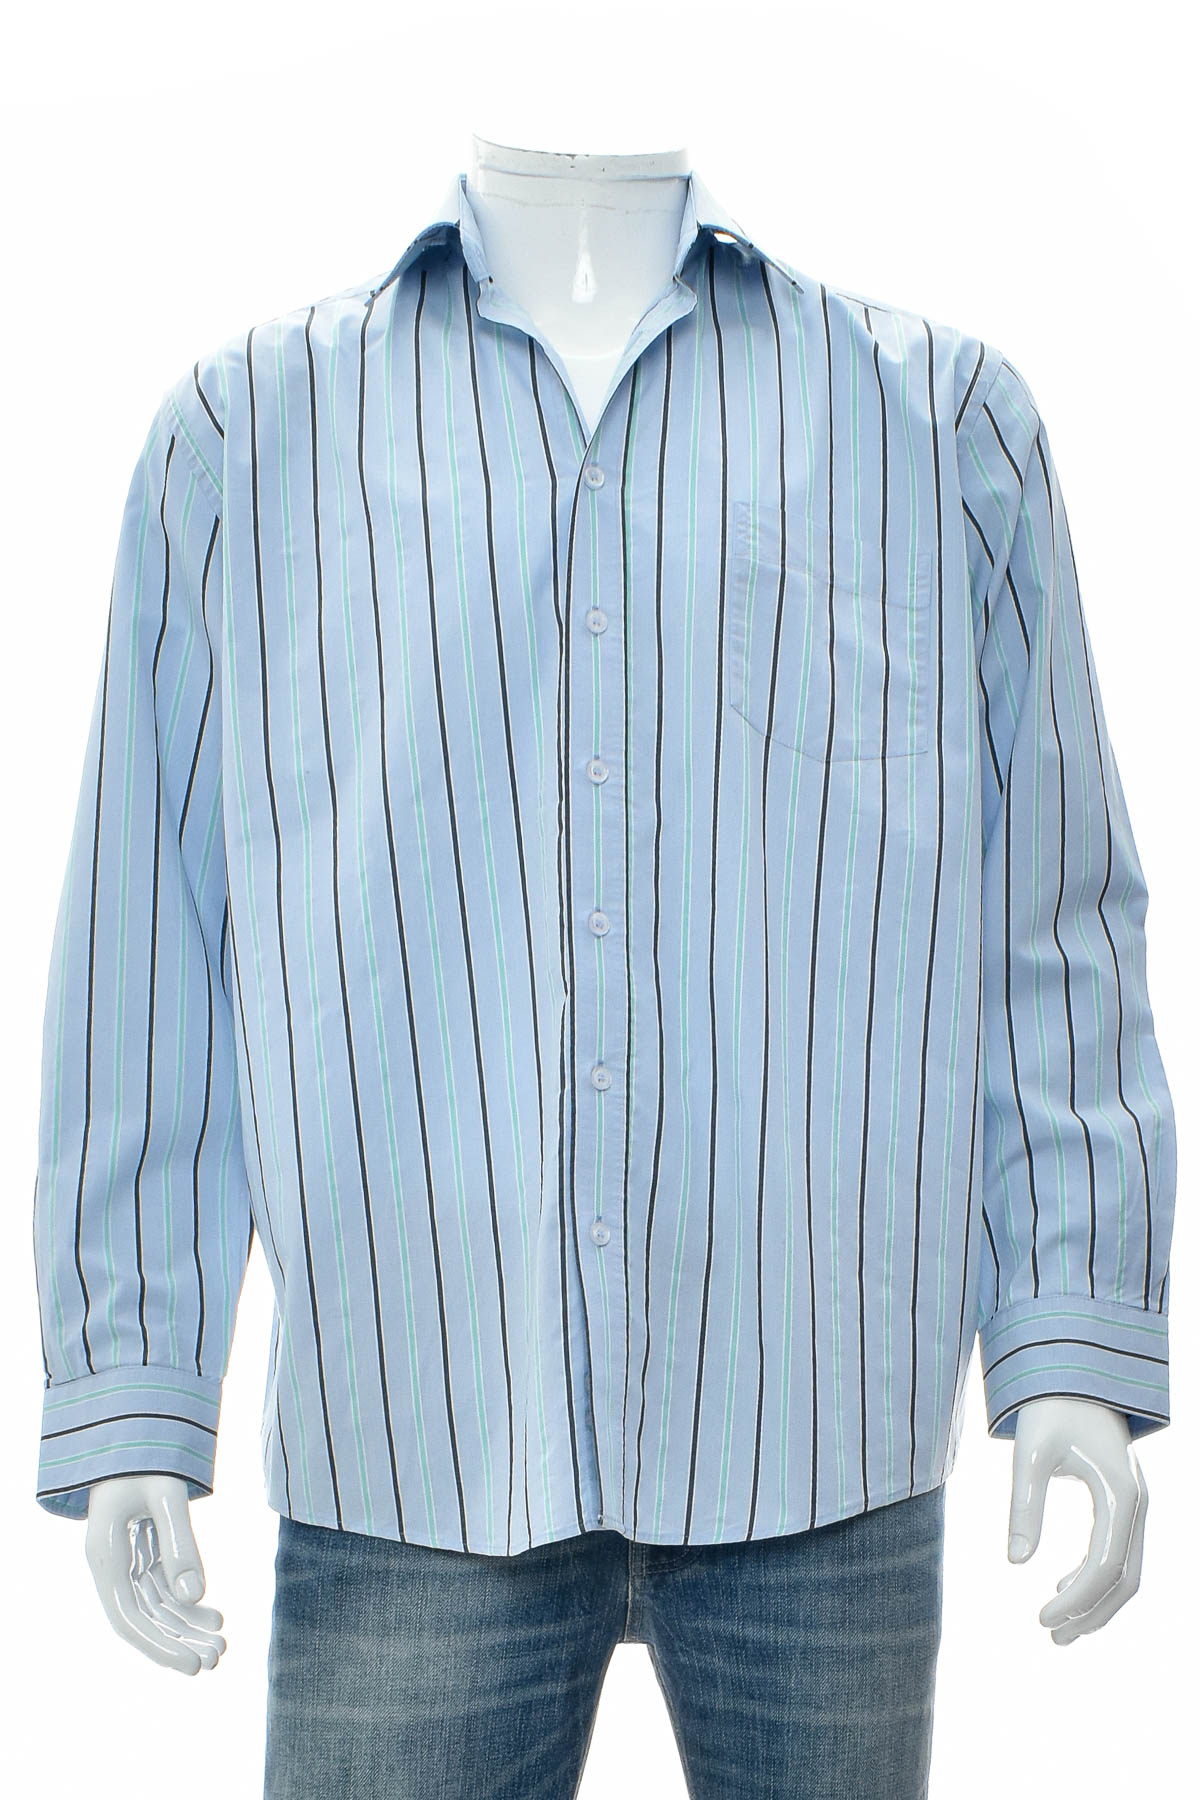 Ανδρικό πουκάμισο - Rover & Lakes - 0